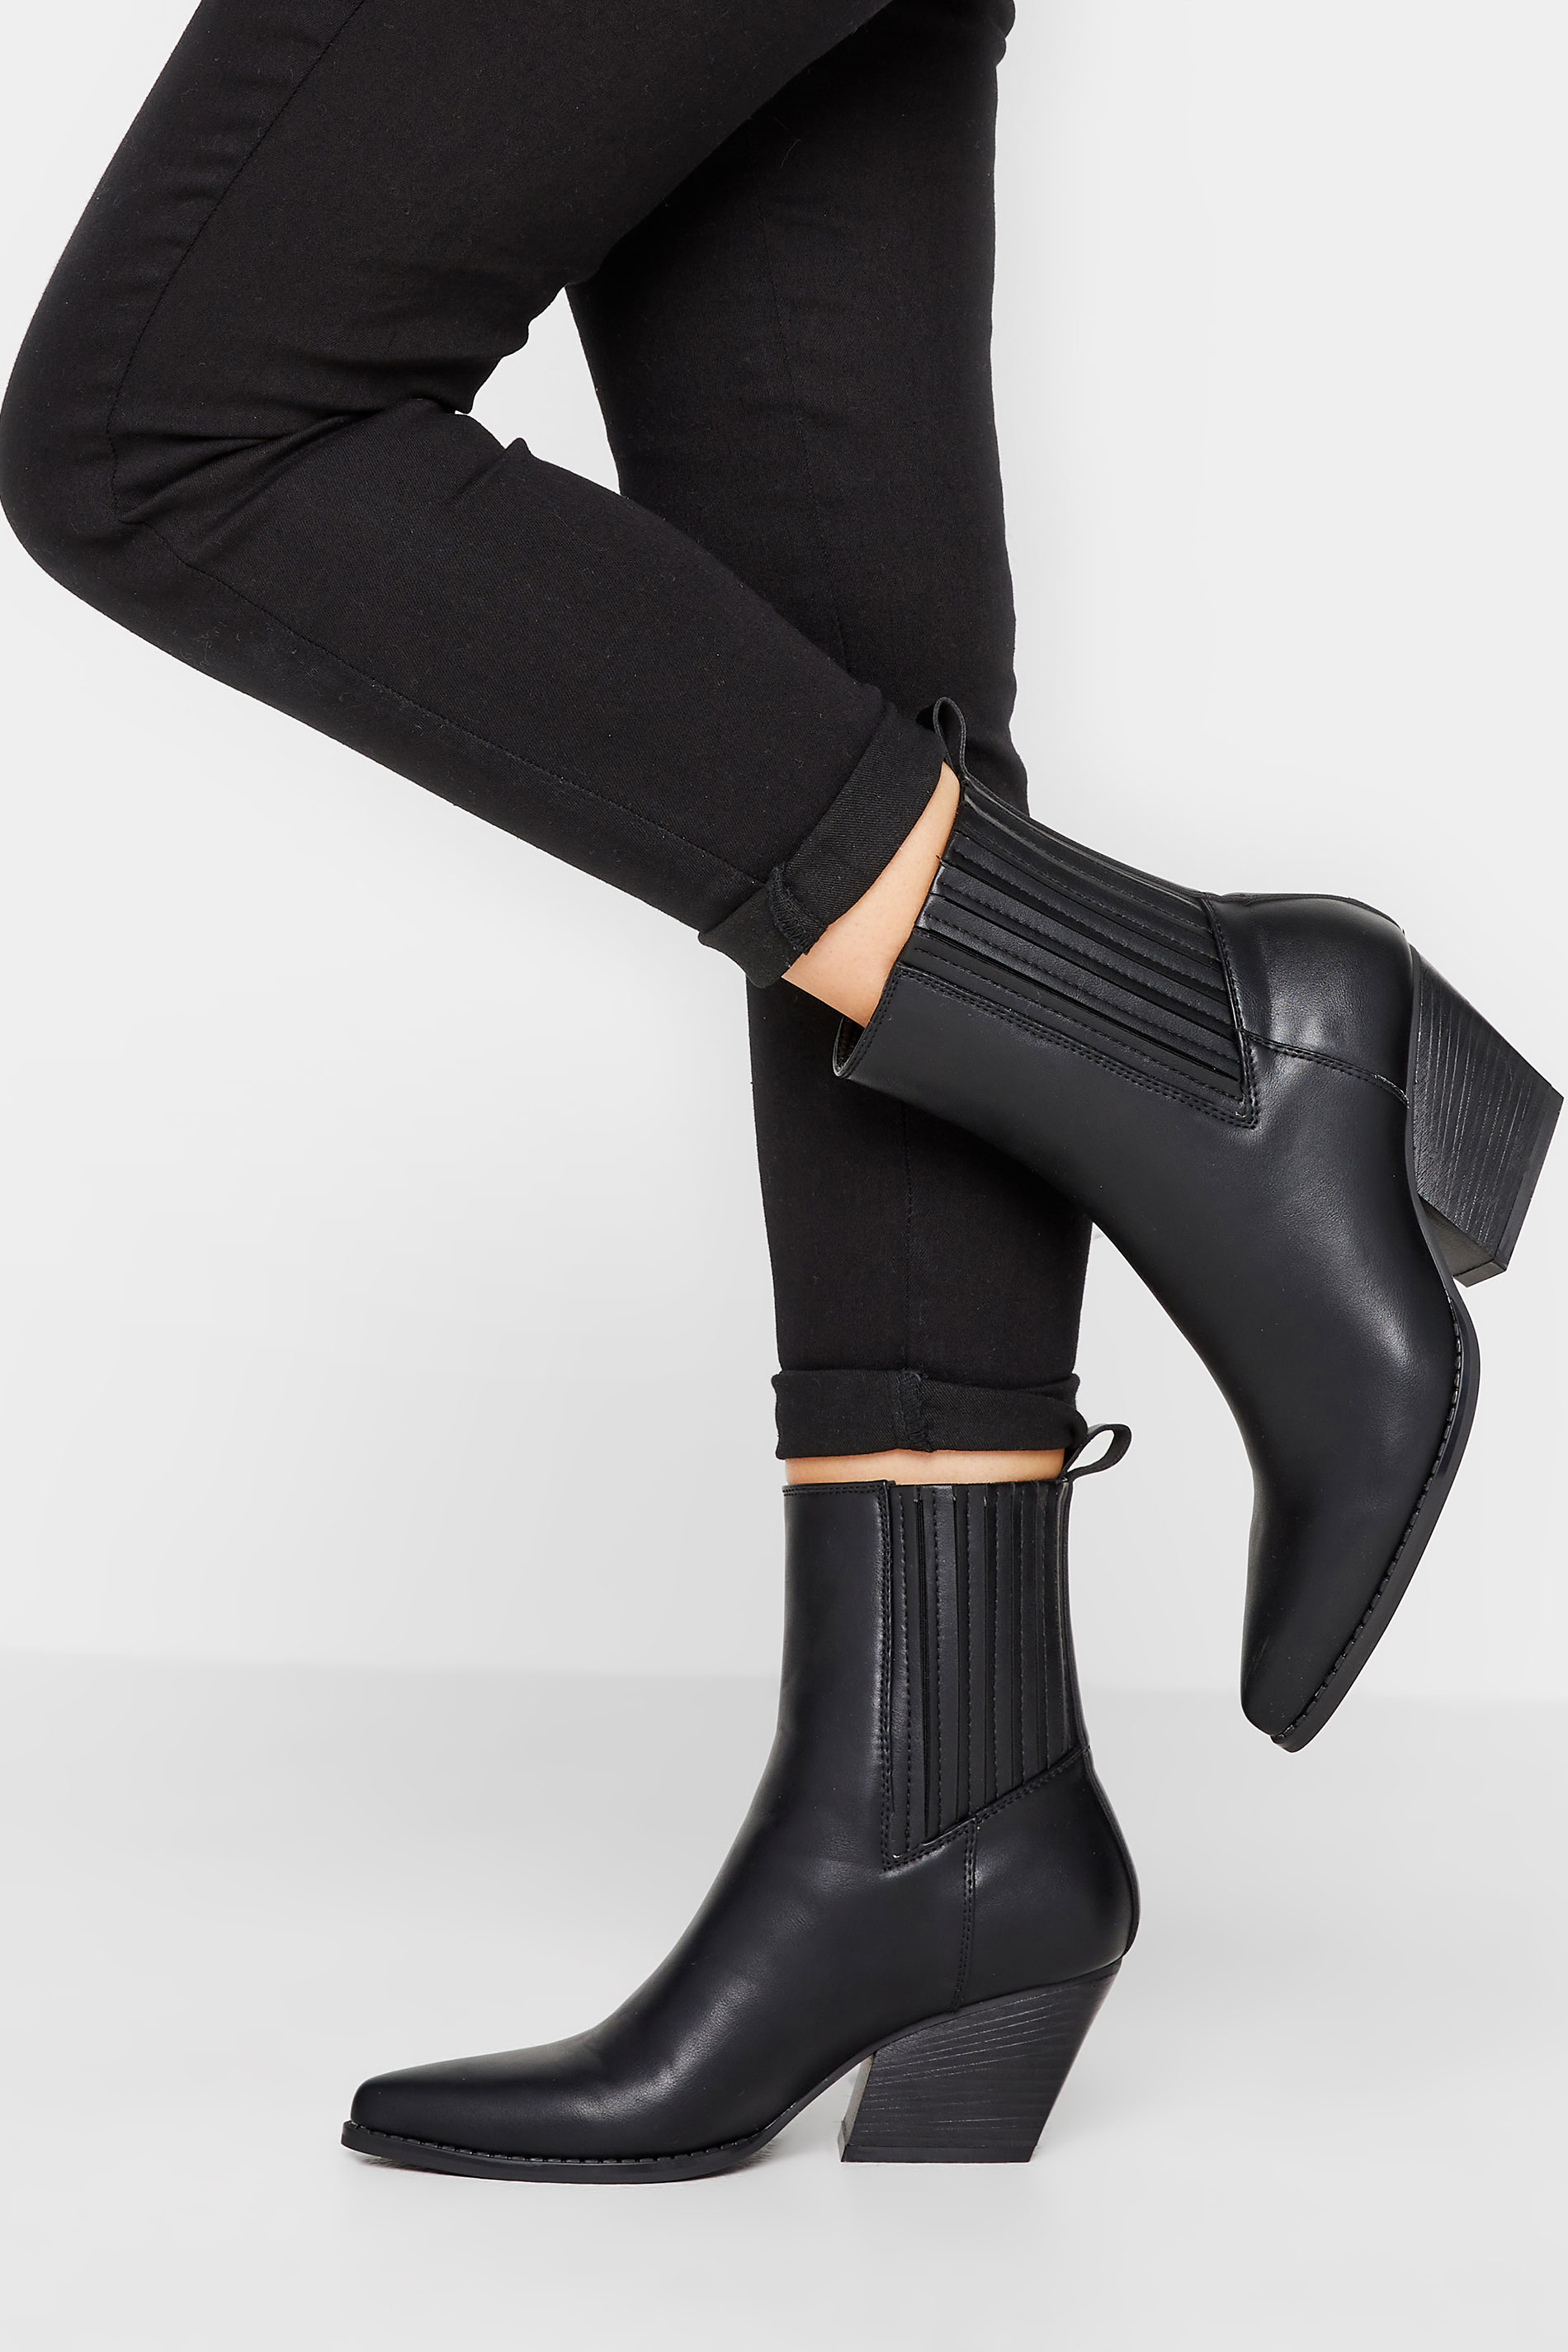 PixieGirl Black Faux Leather Ankle Cowboy Boots In Standard Fit | PixieGirl 1